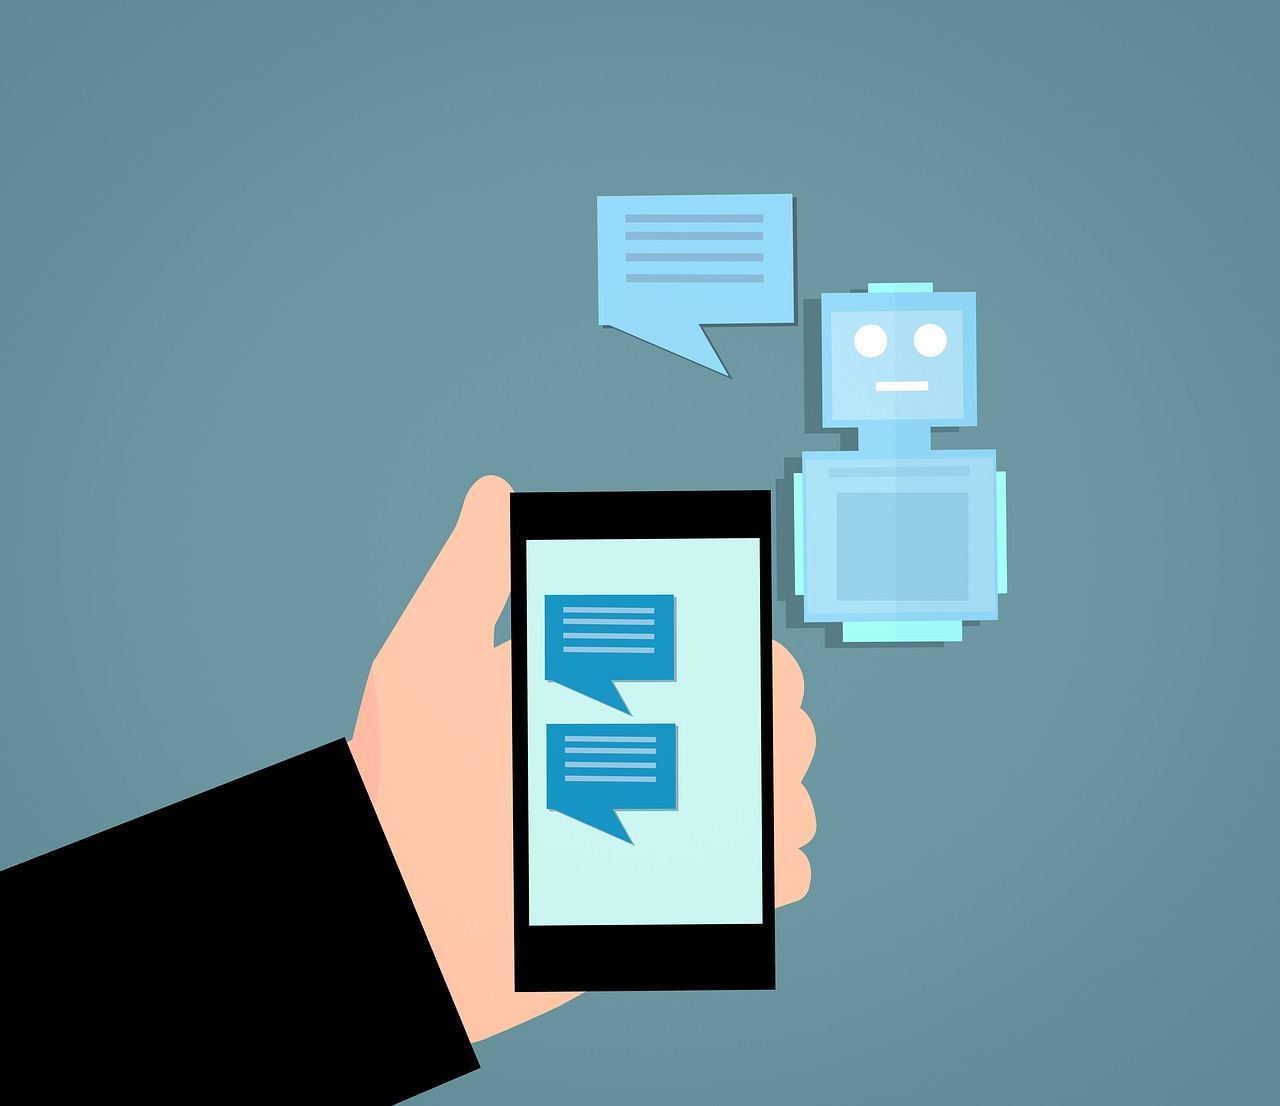 Grafik einer Hand, die ein Smartphone hält. Auf dem Display ein Chat. Im Hintergrund ein Roboter mit Sprechblase.